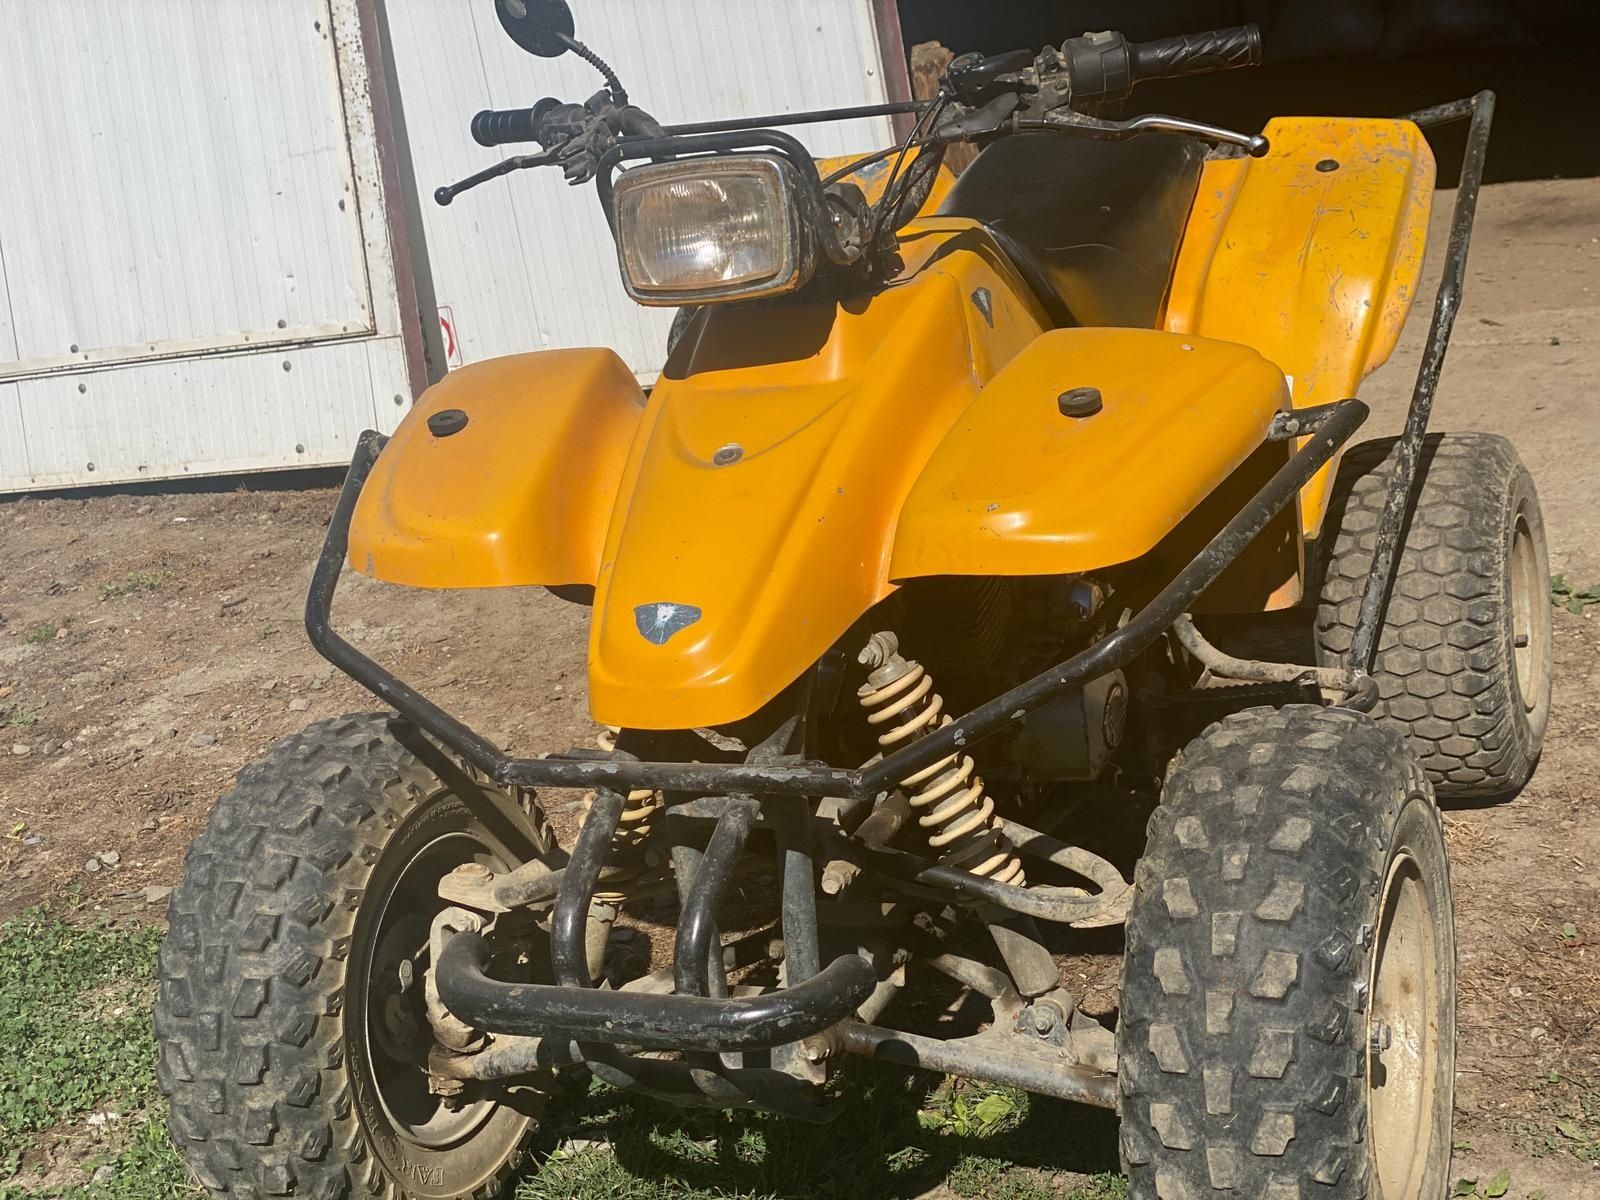 Vând ATV 250 cc in stare buna de funcționare